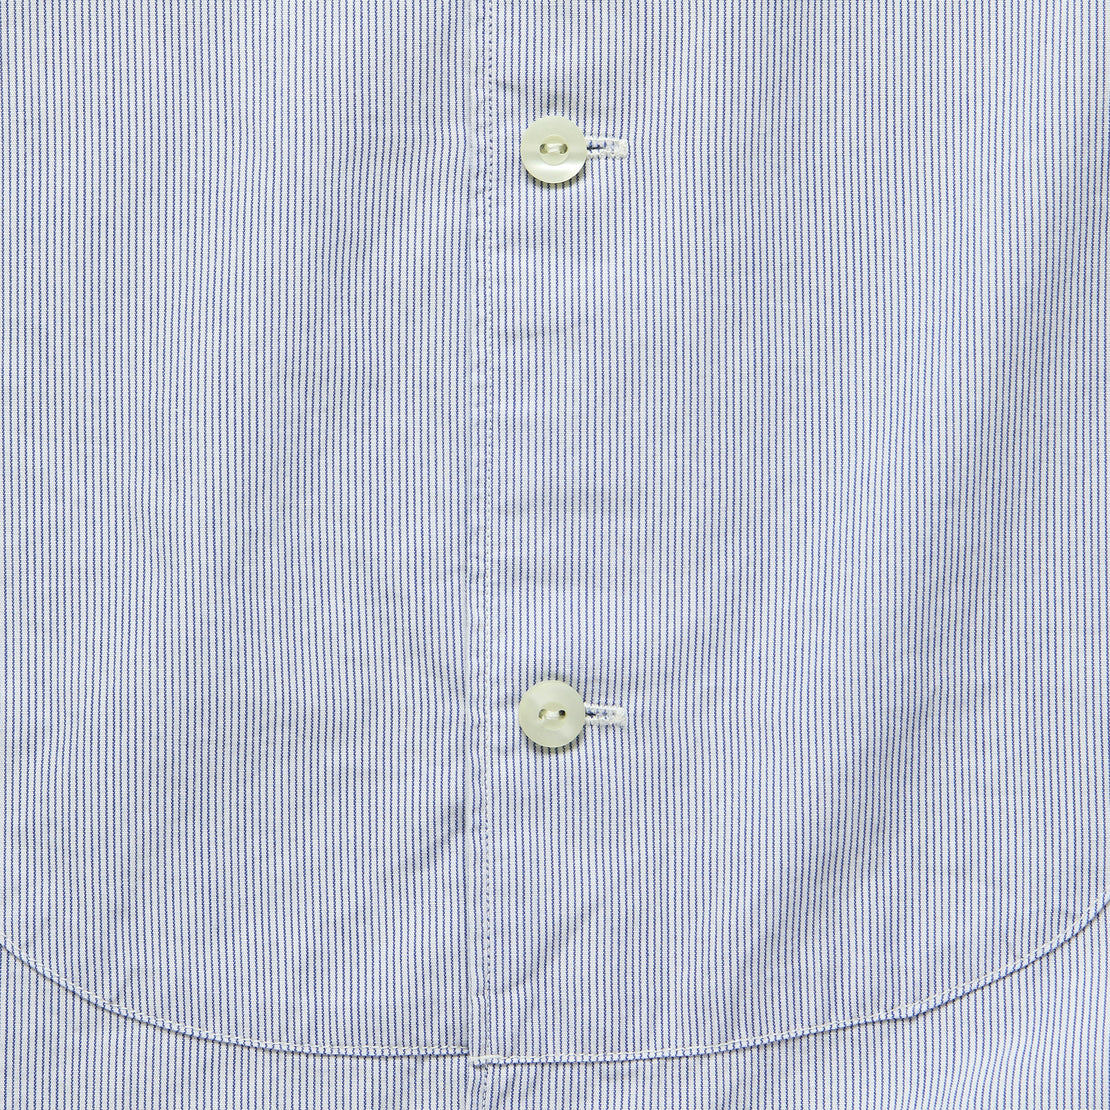 Michelle Bib Shirt - Blue/White Stripe - RRL - STAG Provisions - W - Tops - L/S Woven